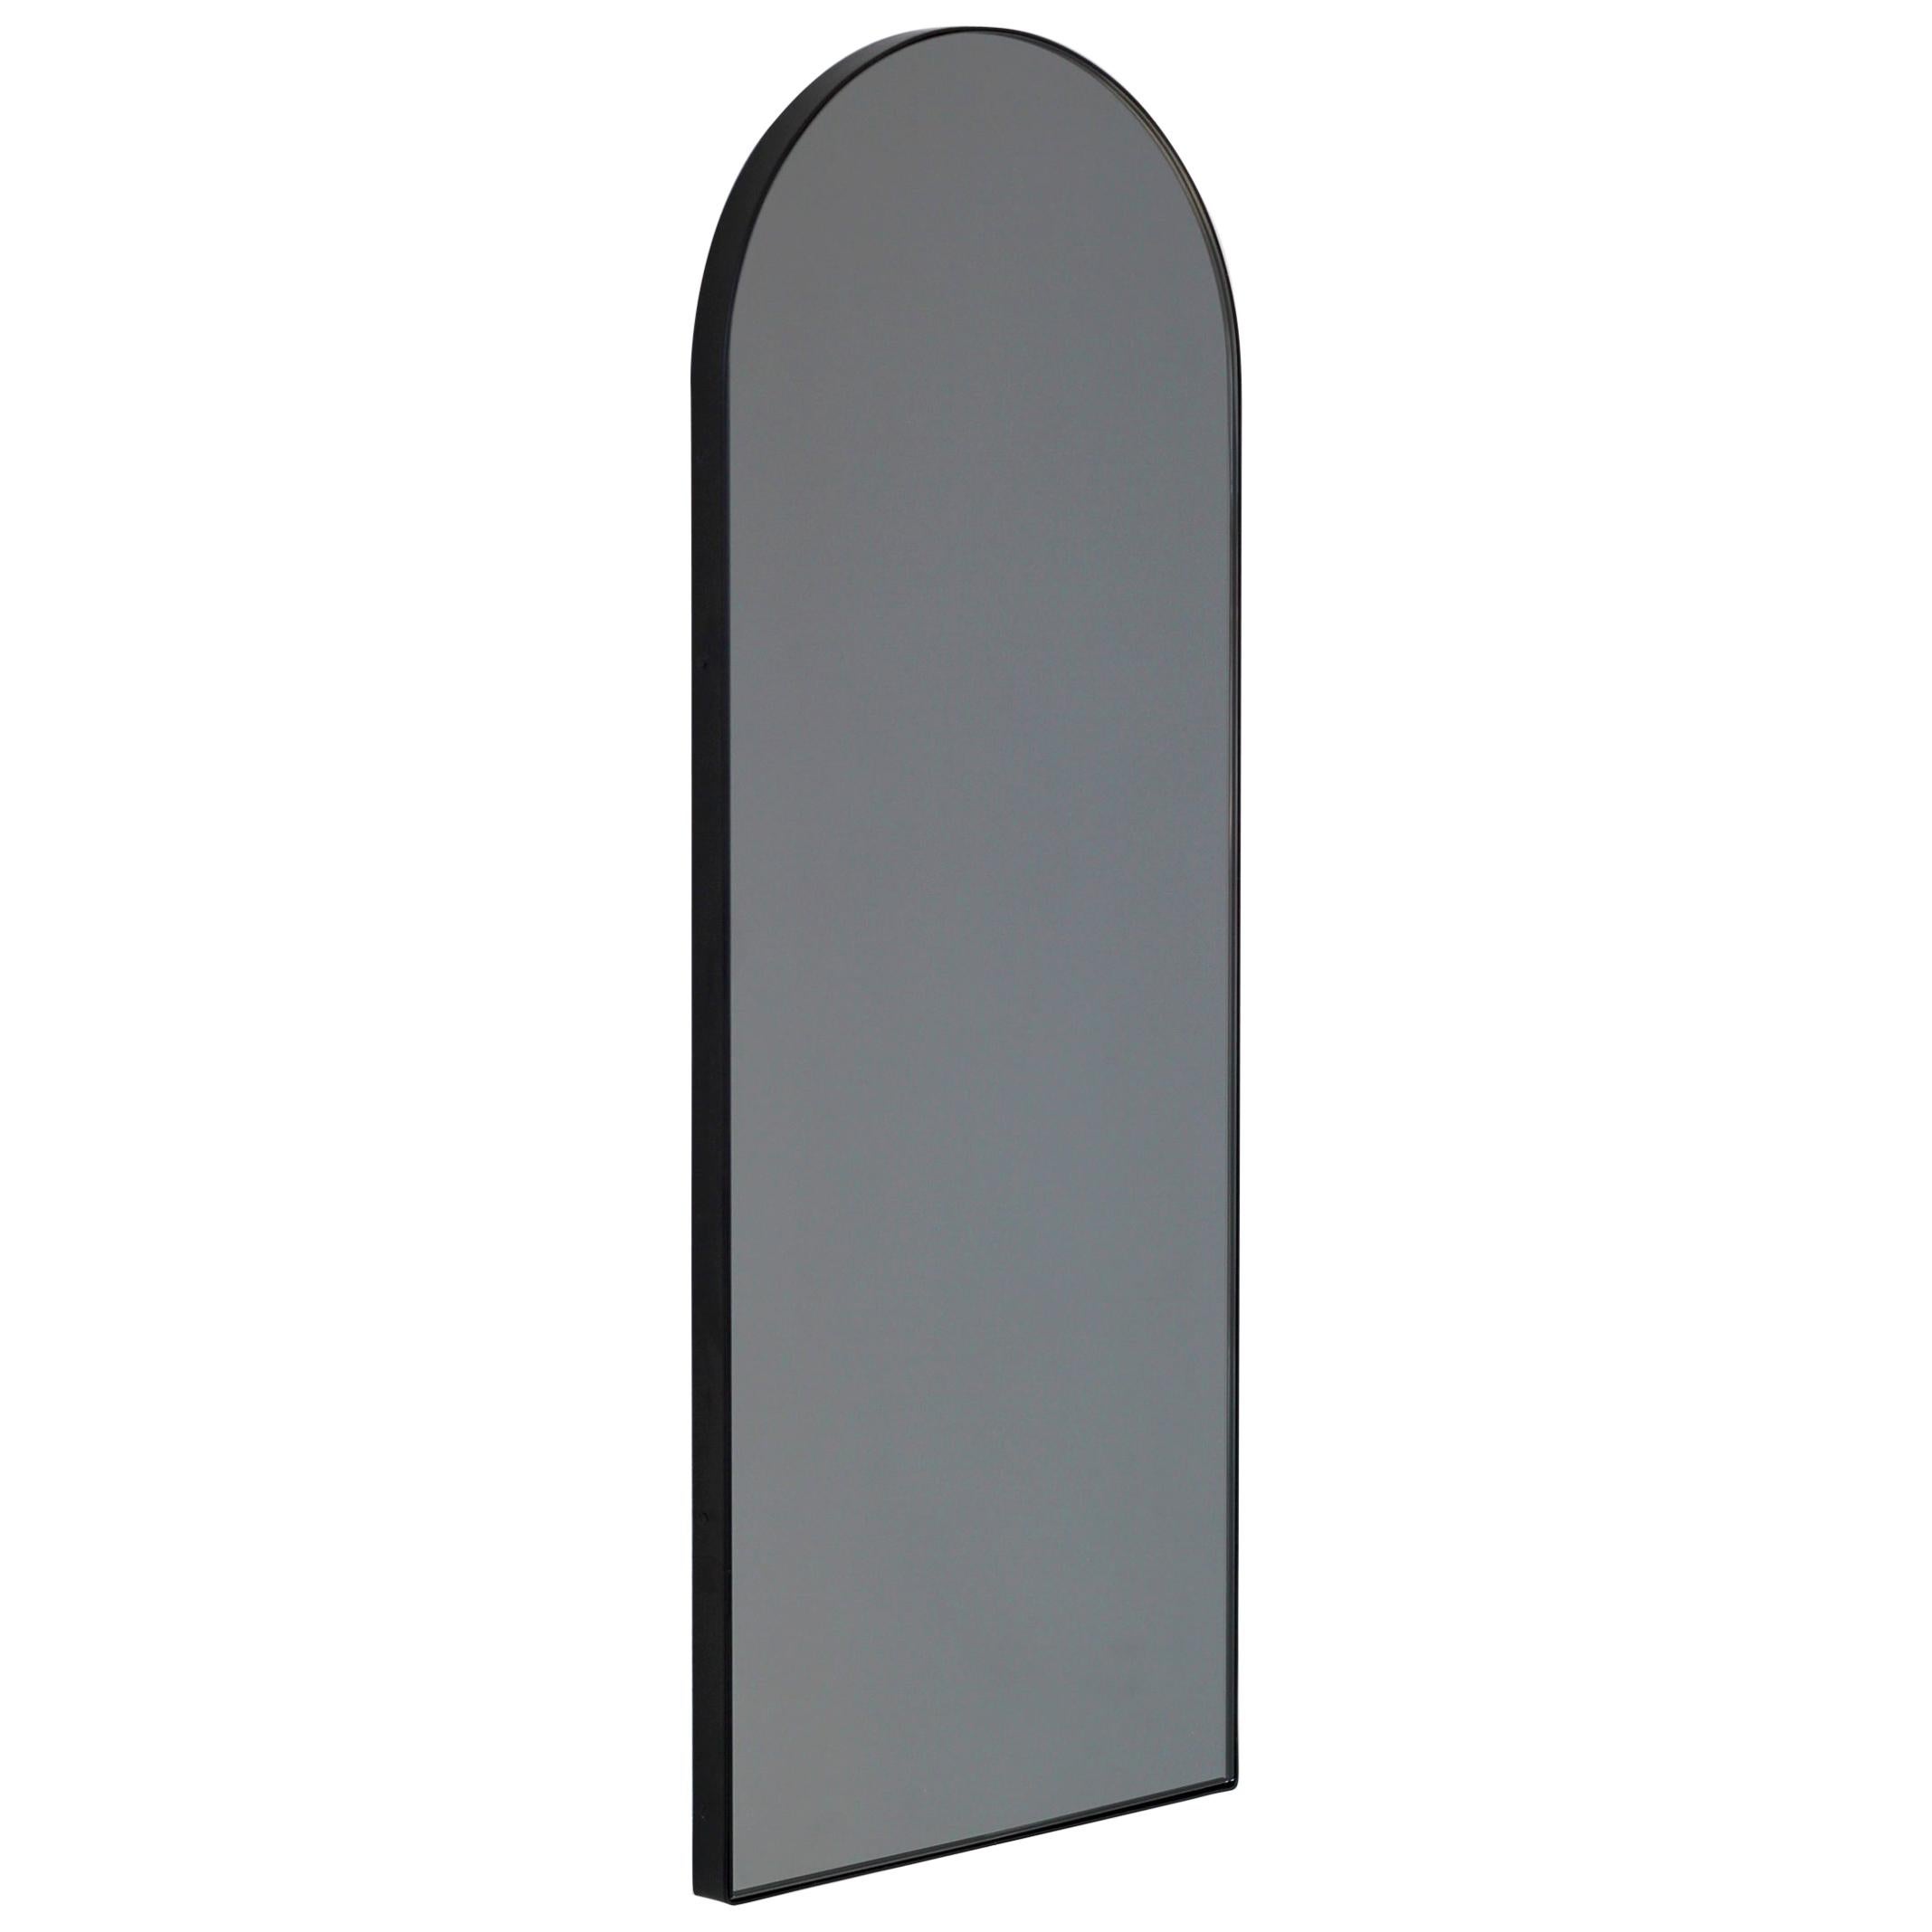 Arcus Arch shaped Black Tinted Art Deco Mirror with a Black Frame, Small (Miroir Art Déco teinté en forme d'arche avec un cadre noir)